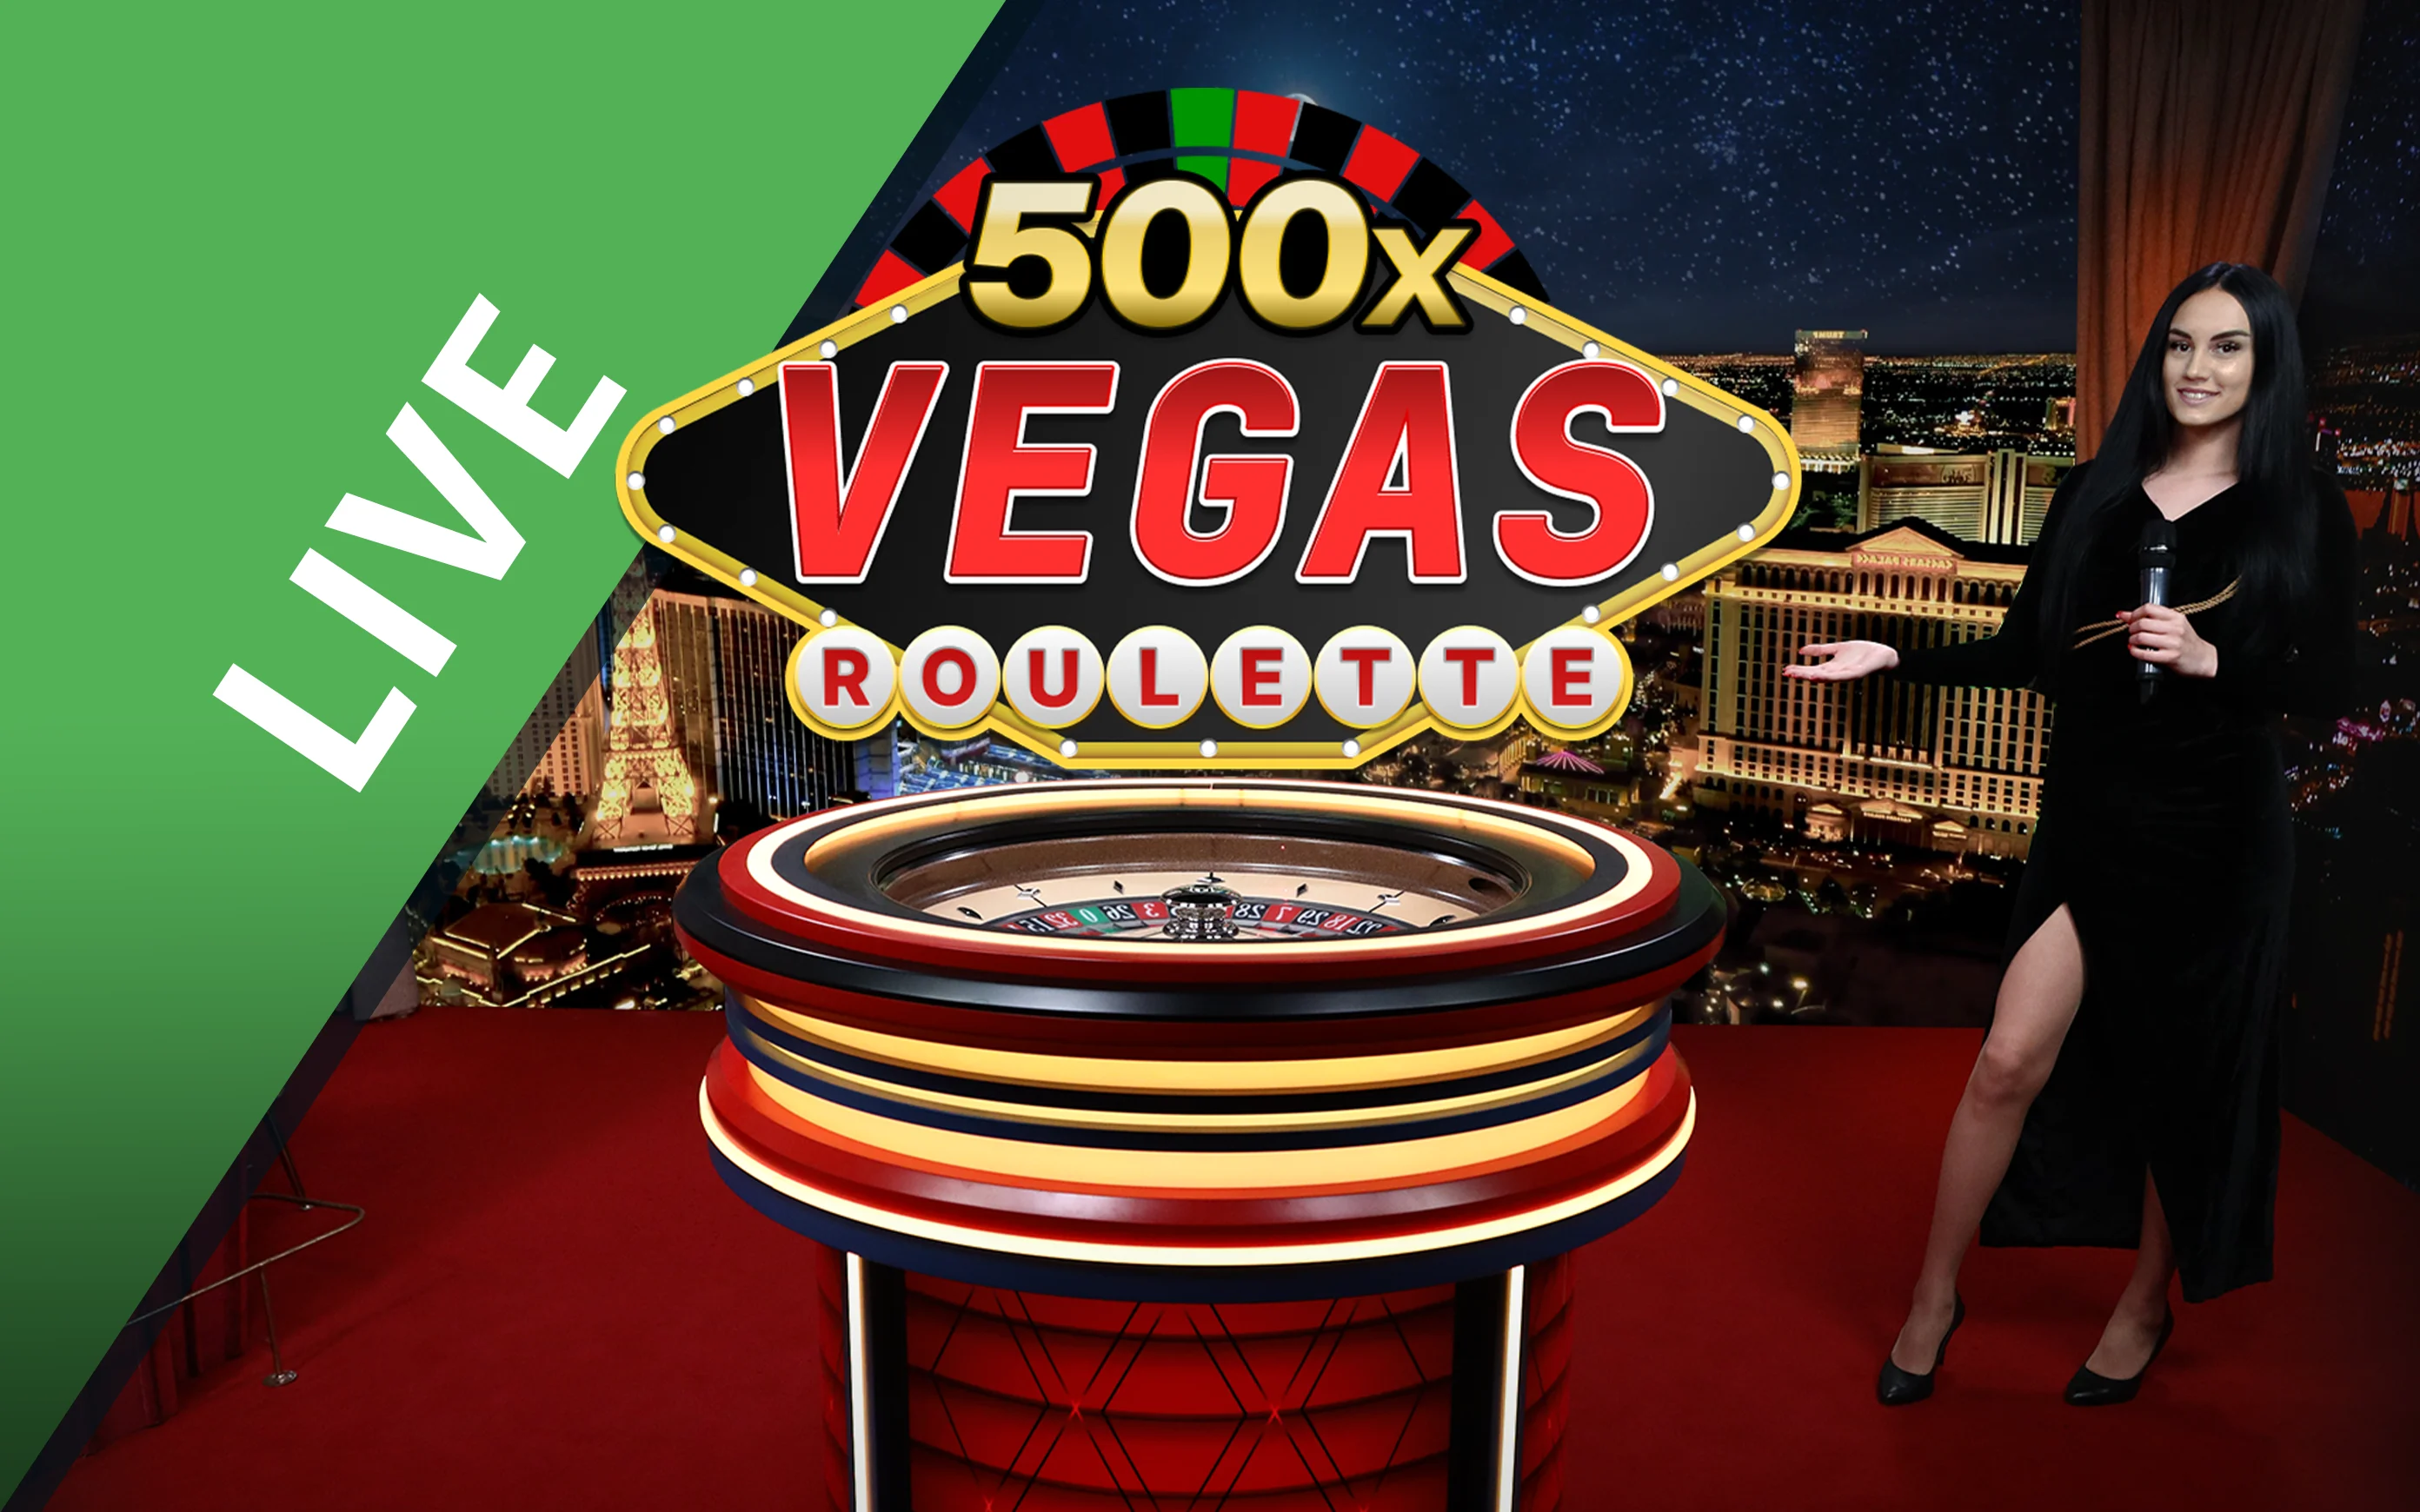 Gioca a Vegas Roulette 500x sul casino online Starcasino.be